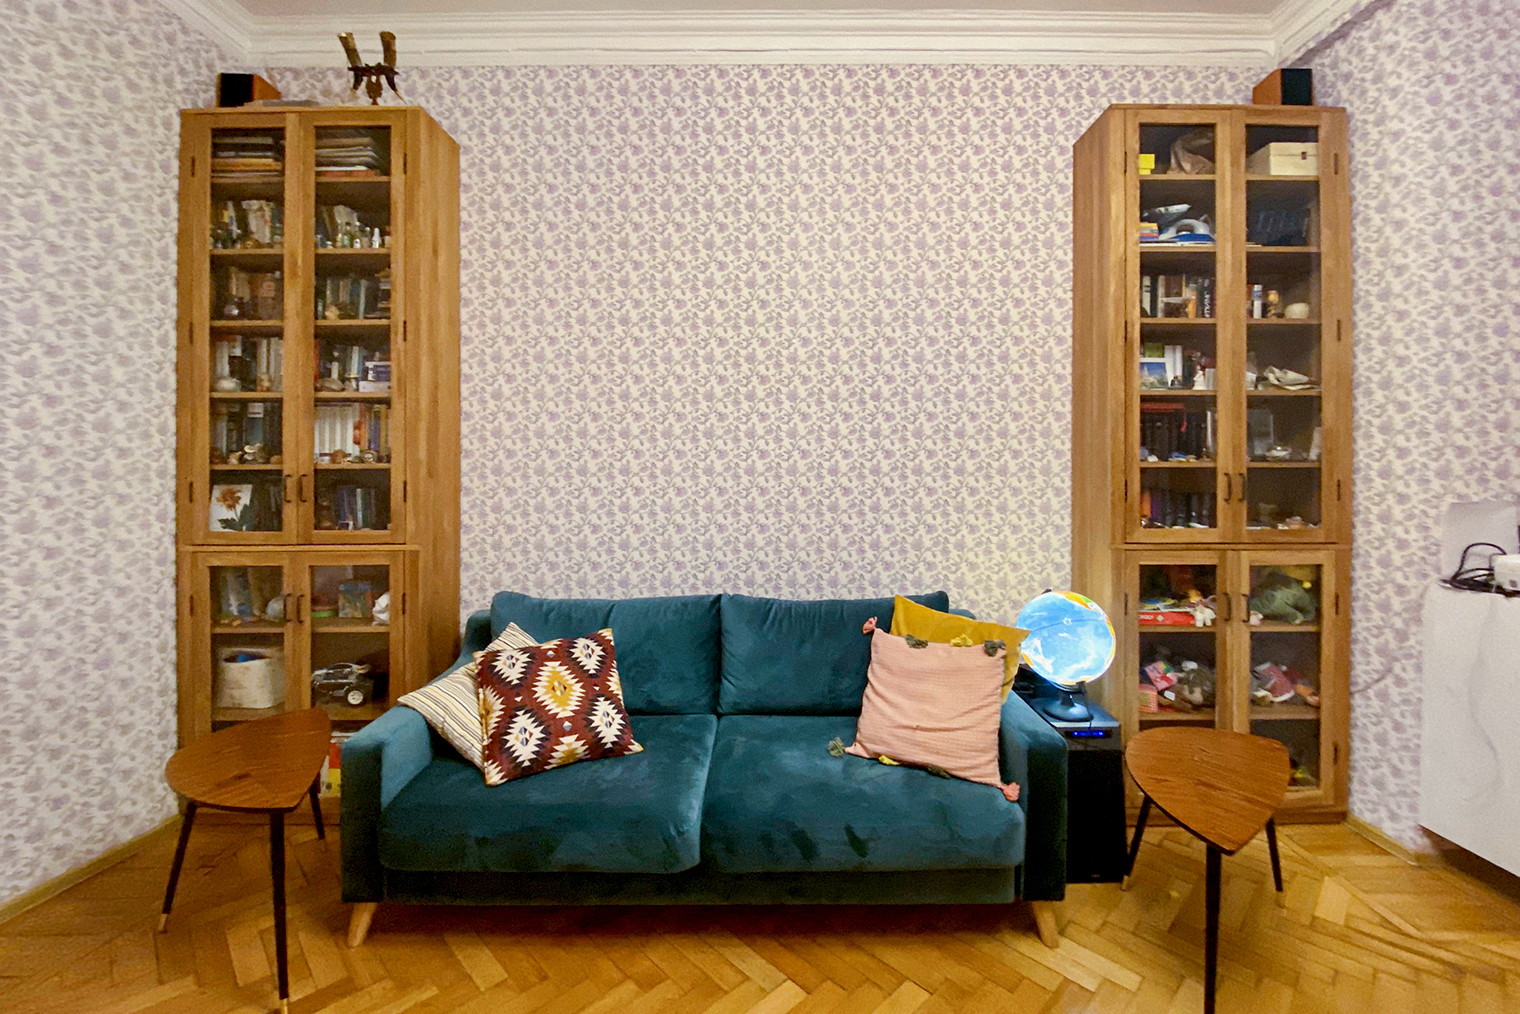 Столики по бокам от дивана вручную делать не стали — купили в «Икее»